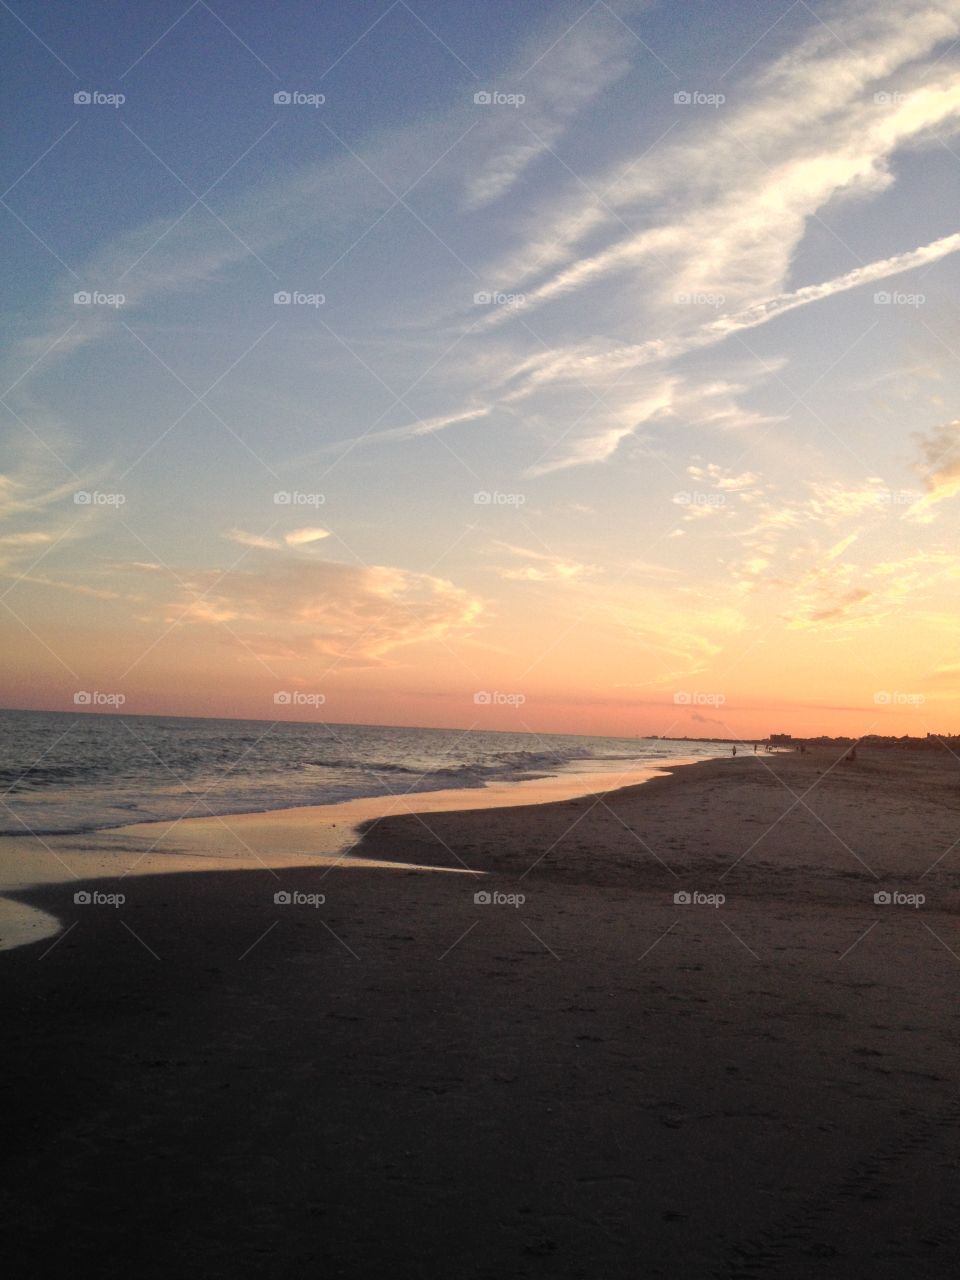 Sunset Ocean 2. Atlantic Beach NC